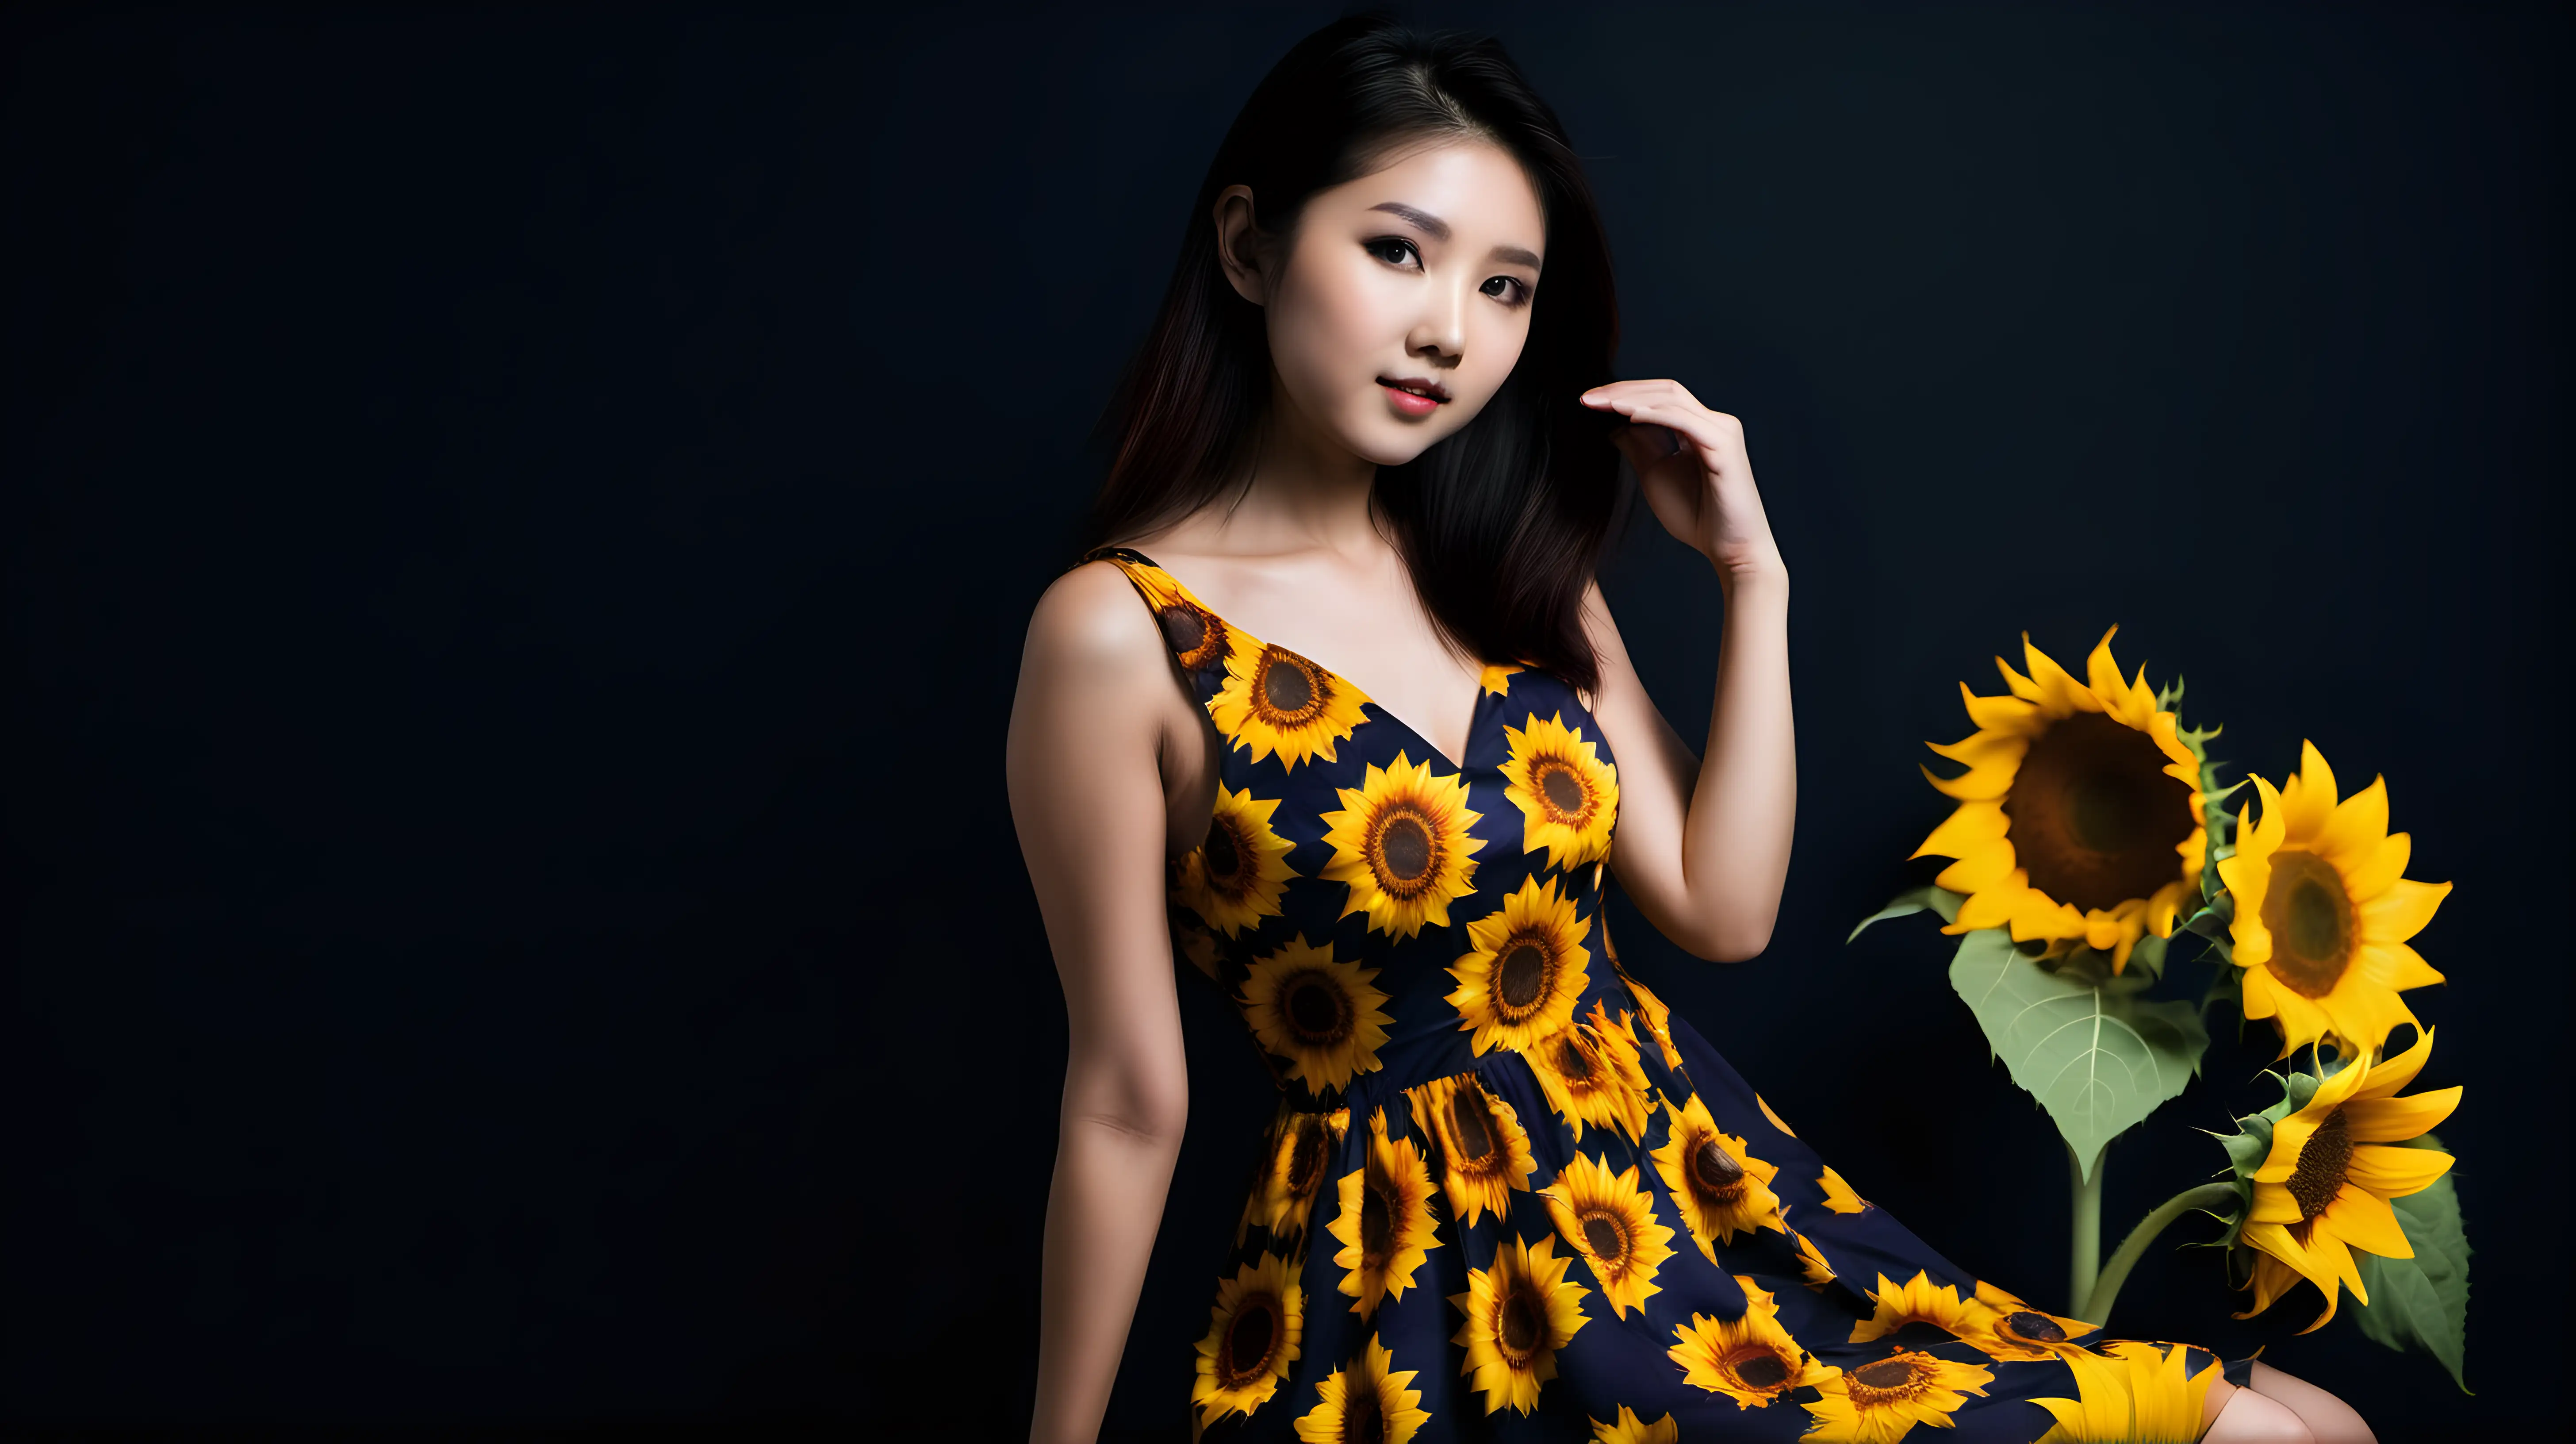 Alluring Asian Girl in Sunflower Dress Against Dark Background